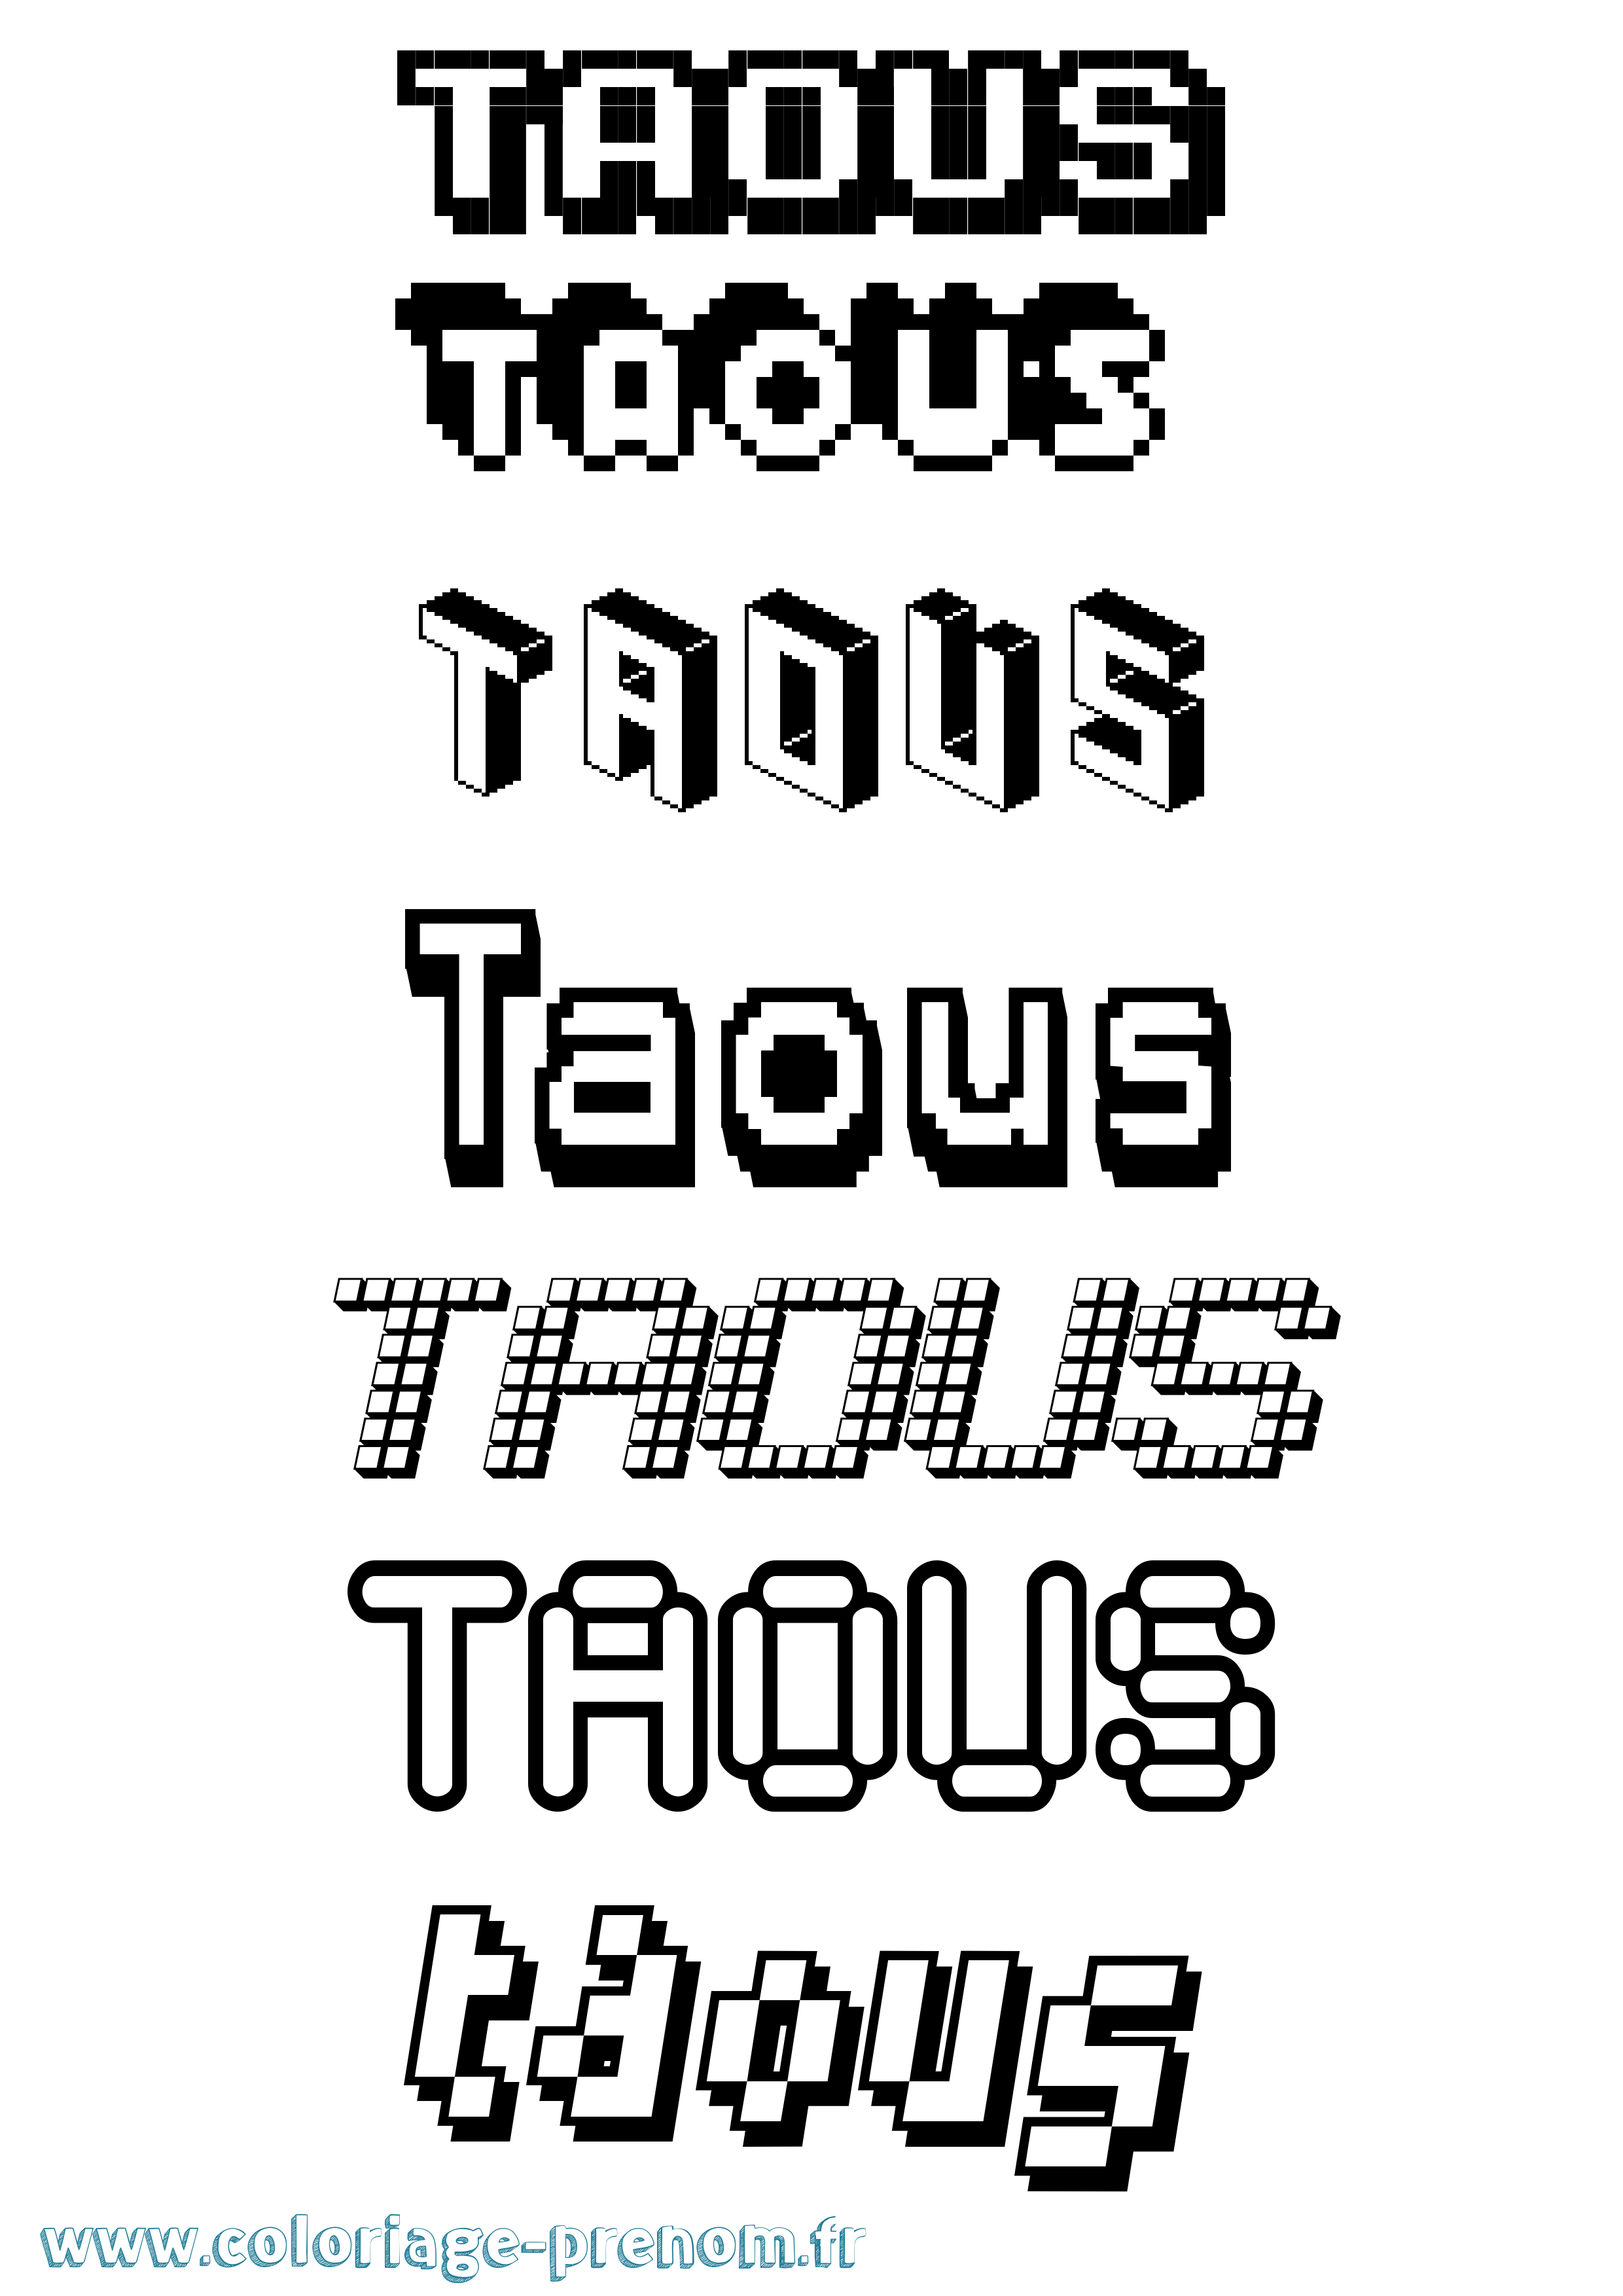 Coloriage prénom Taous Pixel